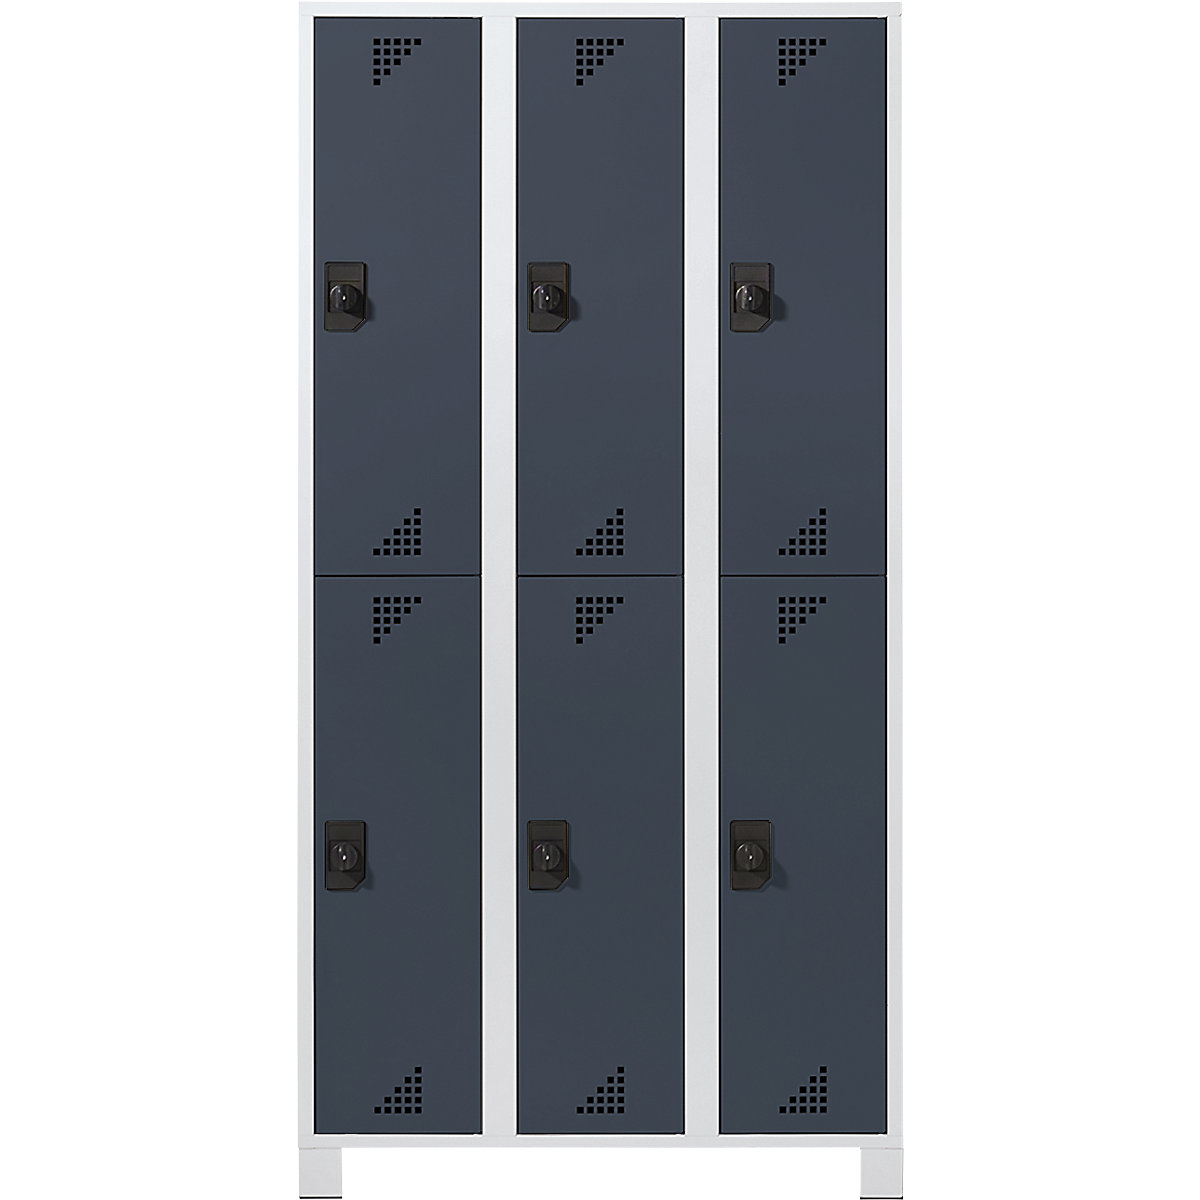 Öltözőszekrény félmagasságú rekeszekkel – eurokraft pro, ma x szé x mé 1800 x 1200 x 500 mm, 6 fülke, világosszürke váz, antracitszürke ajtók-5